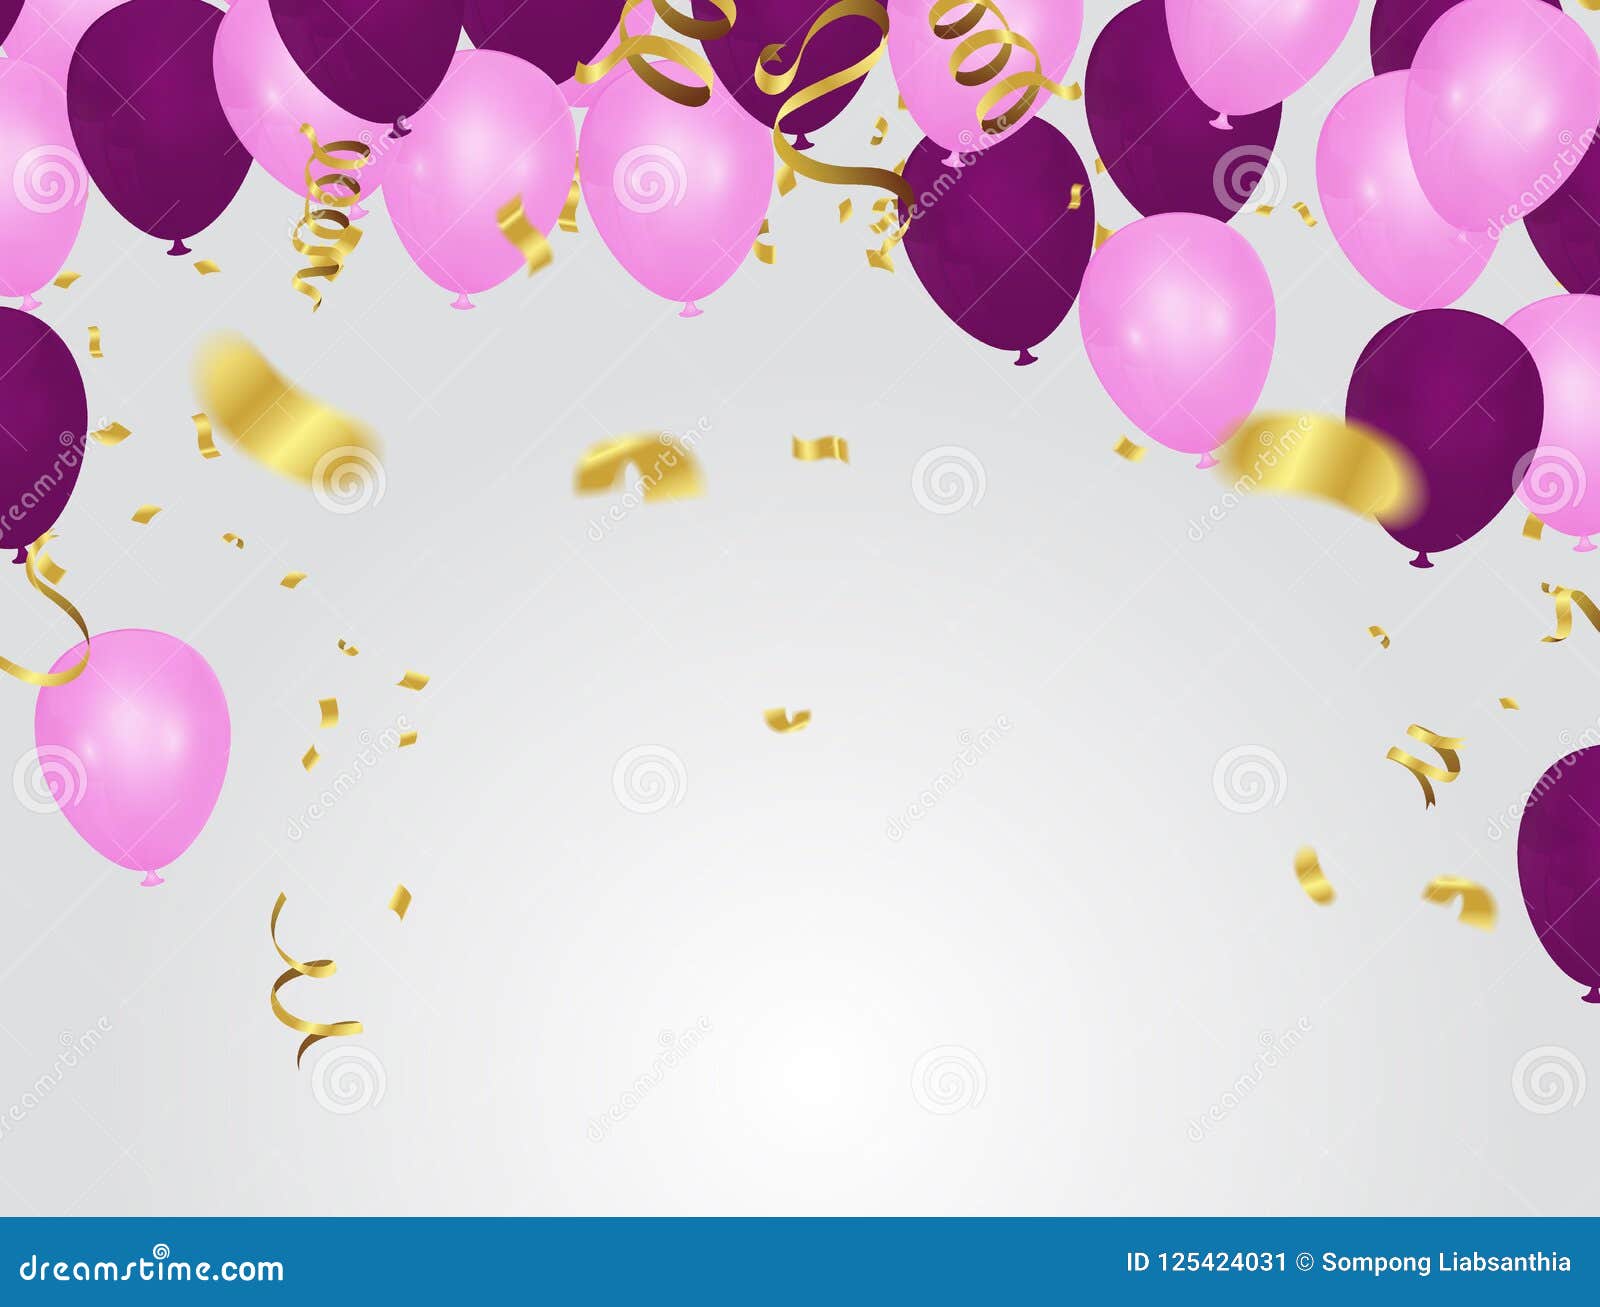 Những bóng bay vàng hồng và tím sắc màu trên nền hồng trang trí sinh nhật, sẽ khiến cho bữa tiệc sinh nhật của bạn đẹp đến từng chi tiết. Hãy cùng đến với hình ảnh này để được ngắm nhìn một bữa tiệc sinh nhật lung linh và lộng lẫy như trong mơ.